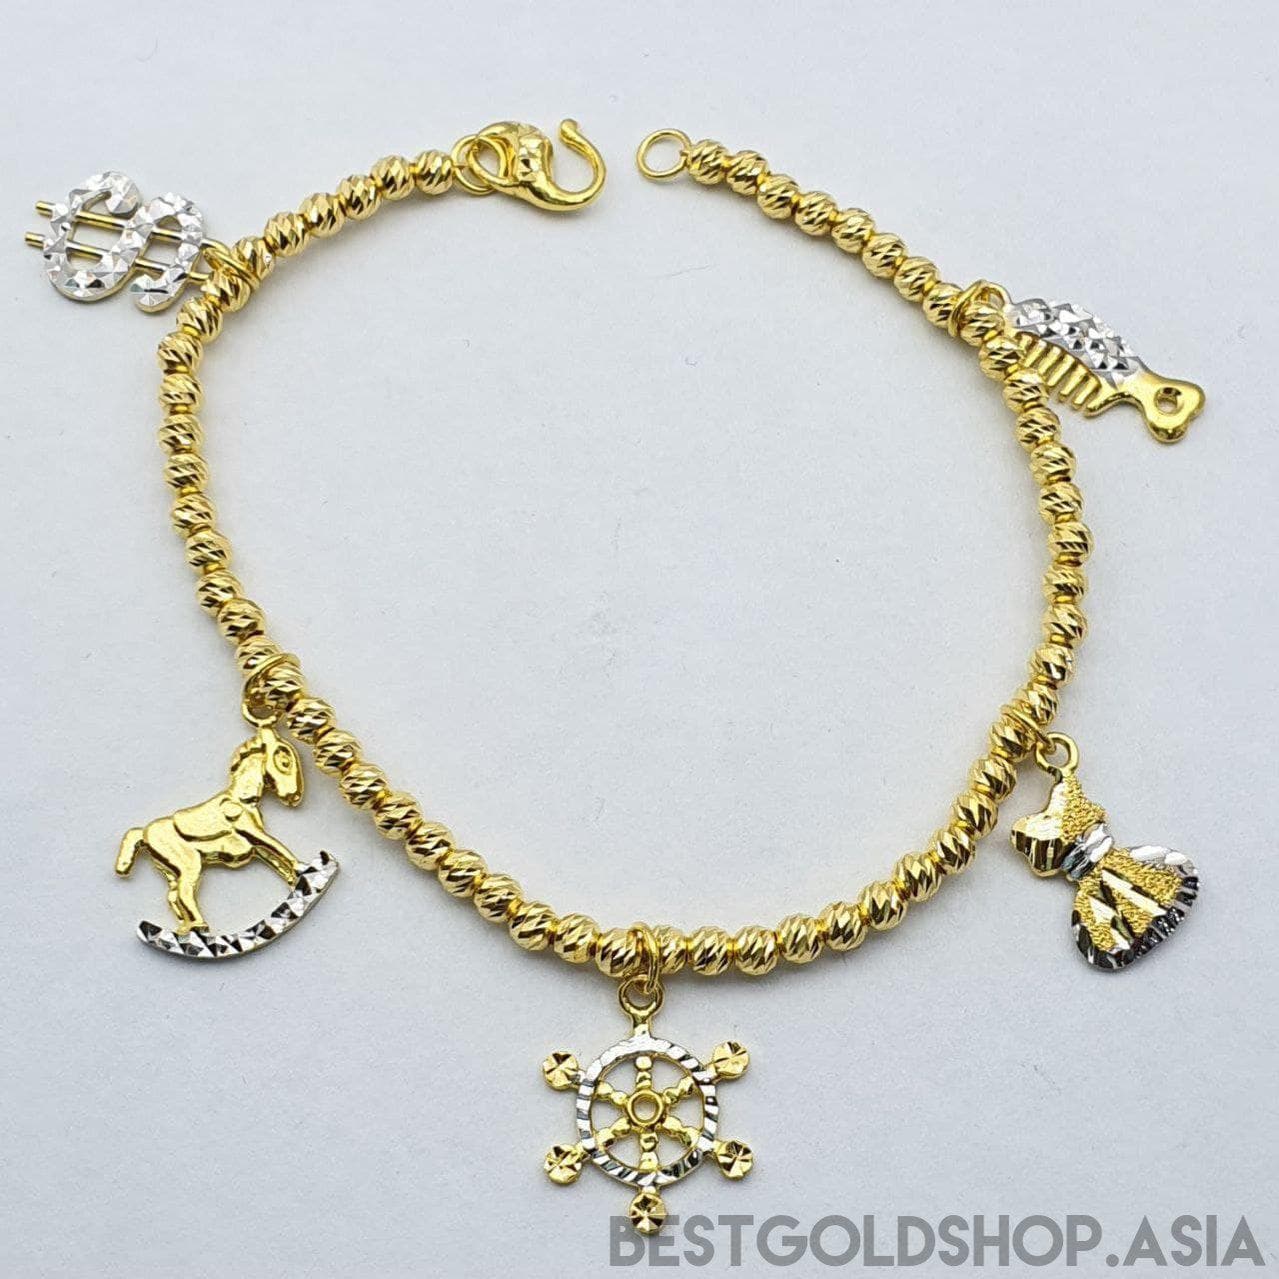 22k / 916 Gold Dangling charm bracelet-916 gold-Best Gold Shop